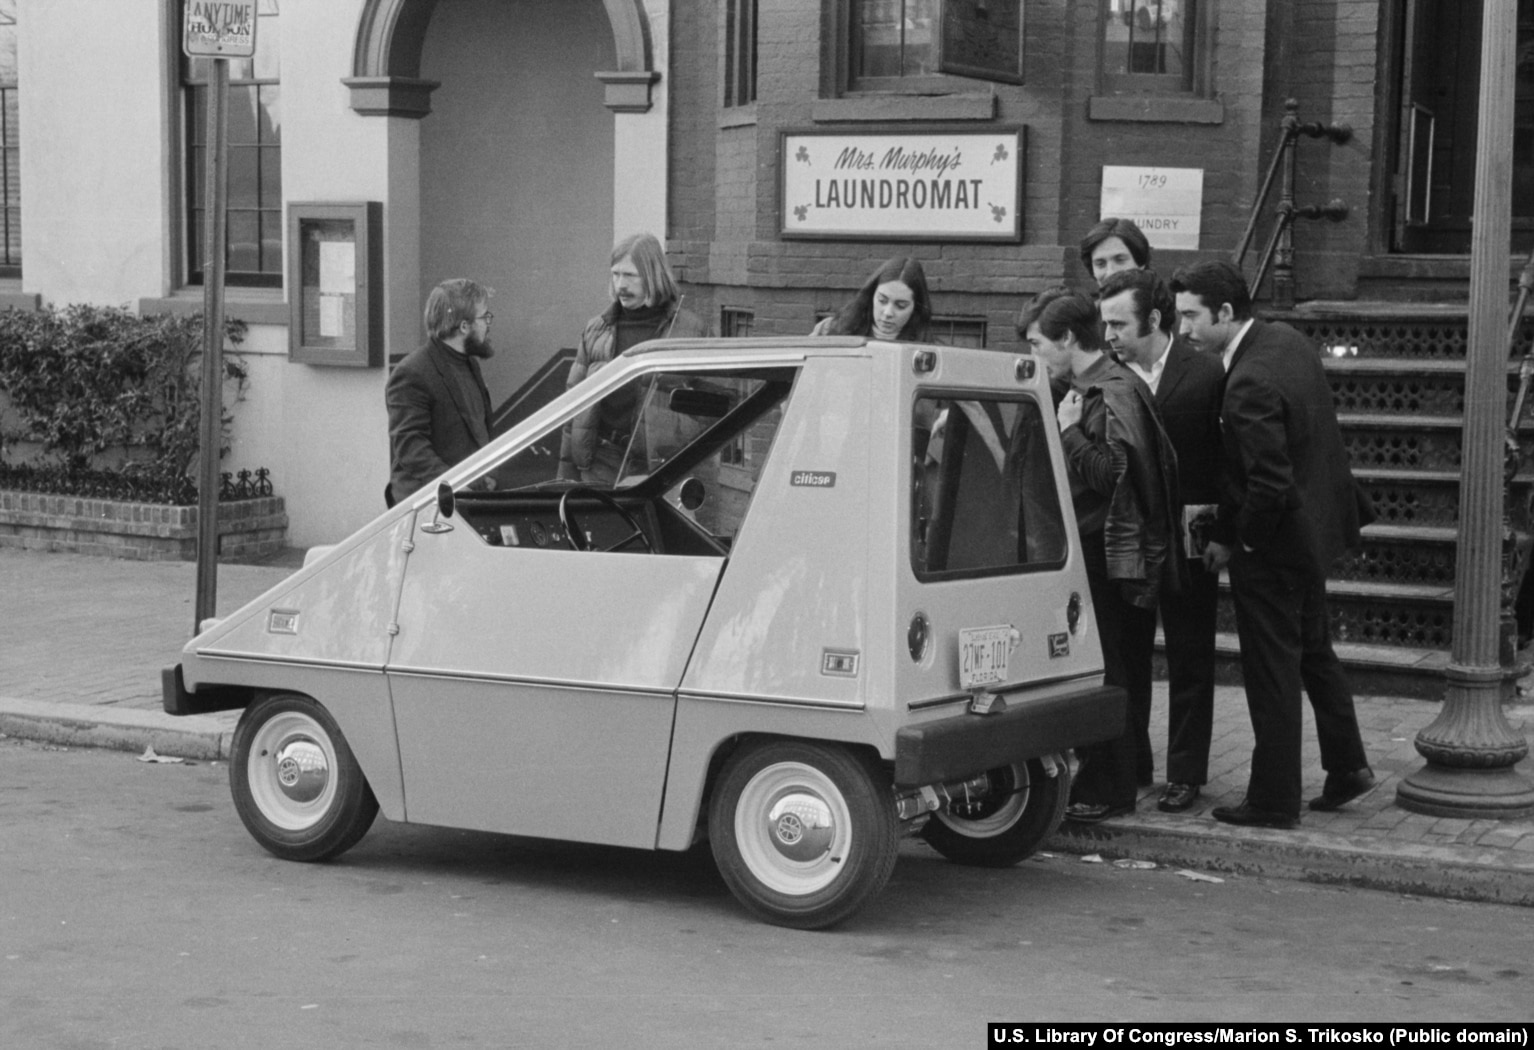 Njerëzit mblidhen rreth një CitiCar (veturë elektrike) në një qytet të paspecifikuar amerikan. Automjeti 600 kilogramësh nisi të prodhohej më 1974 pasi kriza me naftë arriti kulmin. Gjithsej 4.444 vetura të tilla u prodhuan para heqjes nga përdorimi më 1977.